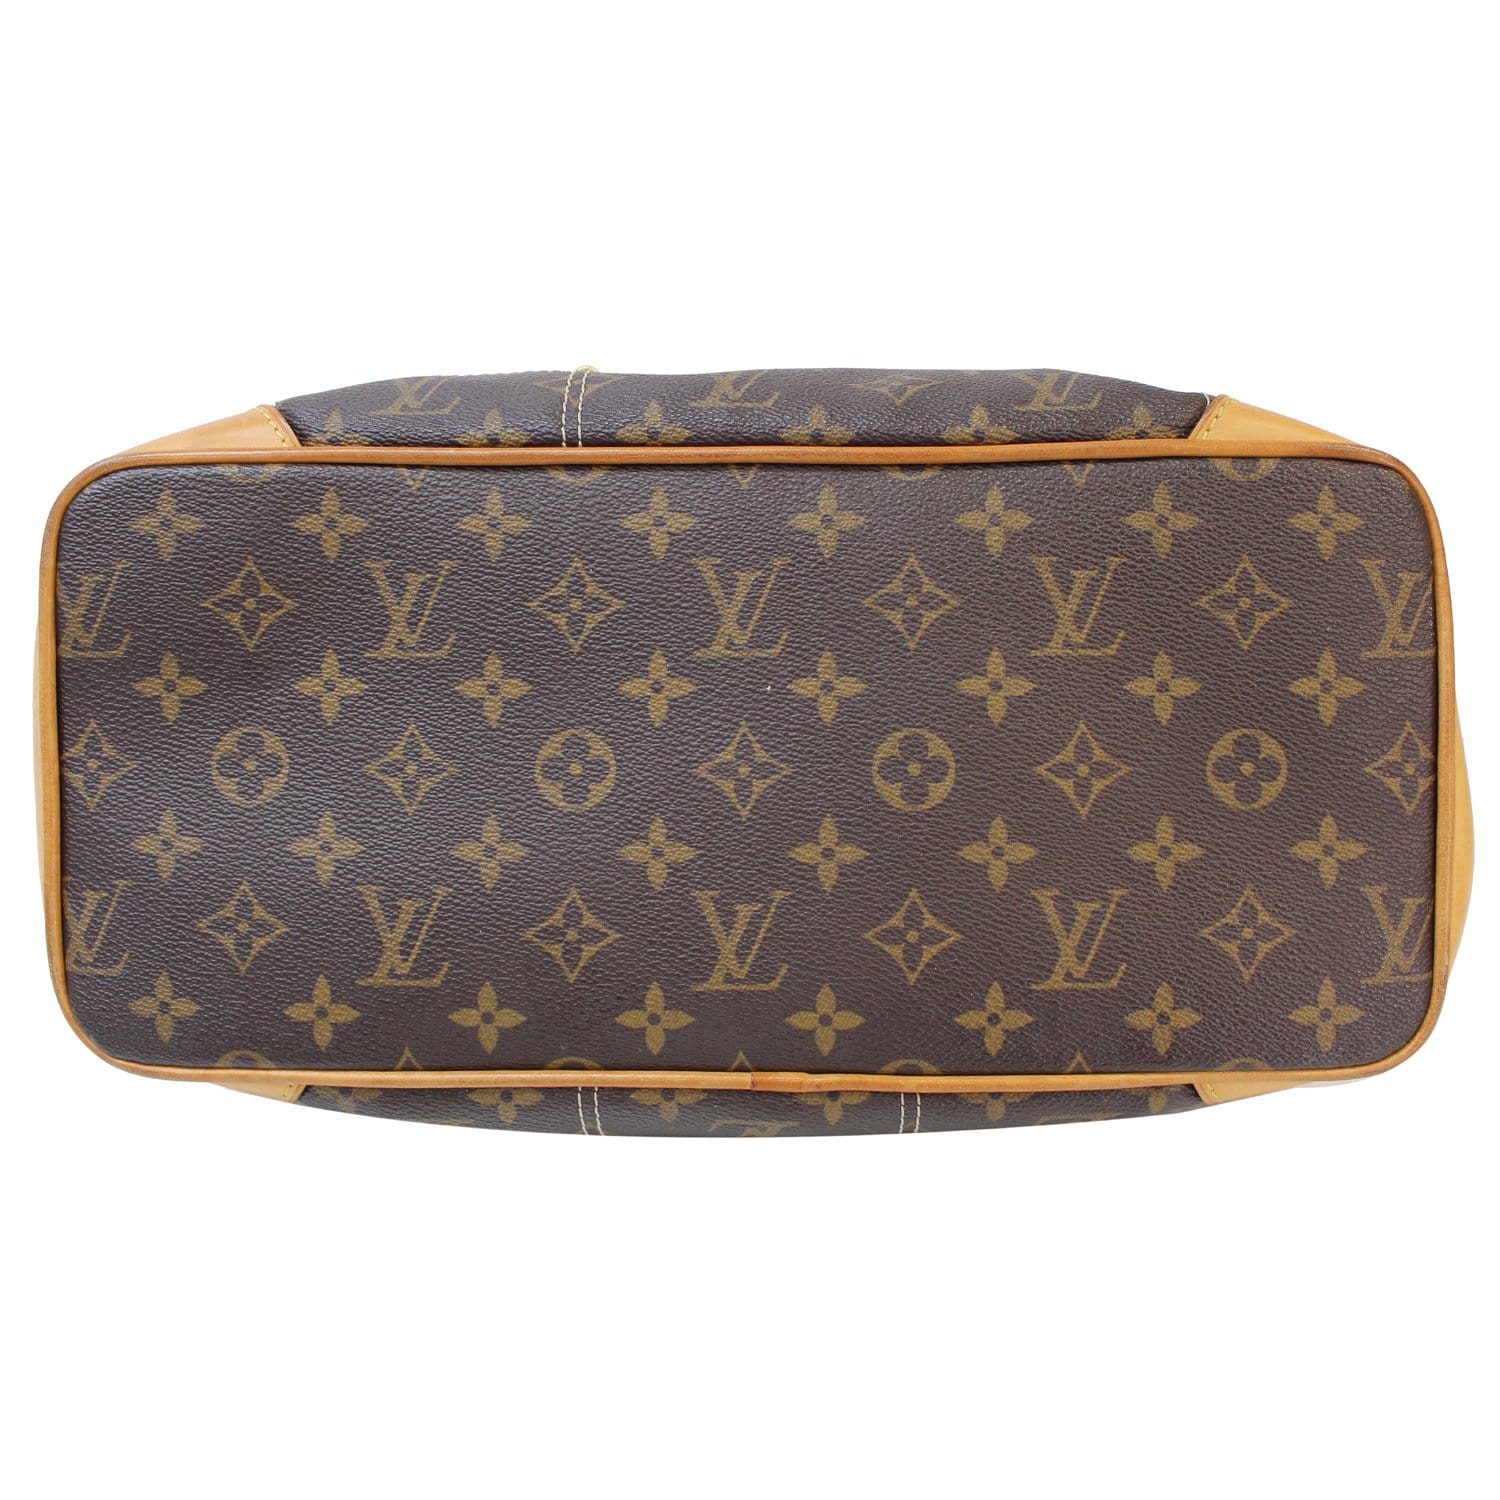 Louis Vuitton Monogram Canvas Riveting Bag Louis Vuitton | The Luxury Closet